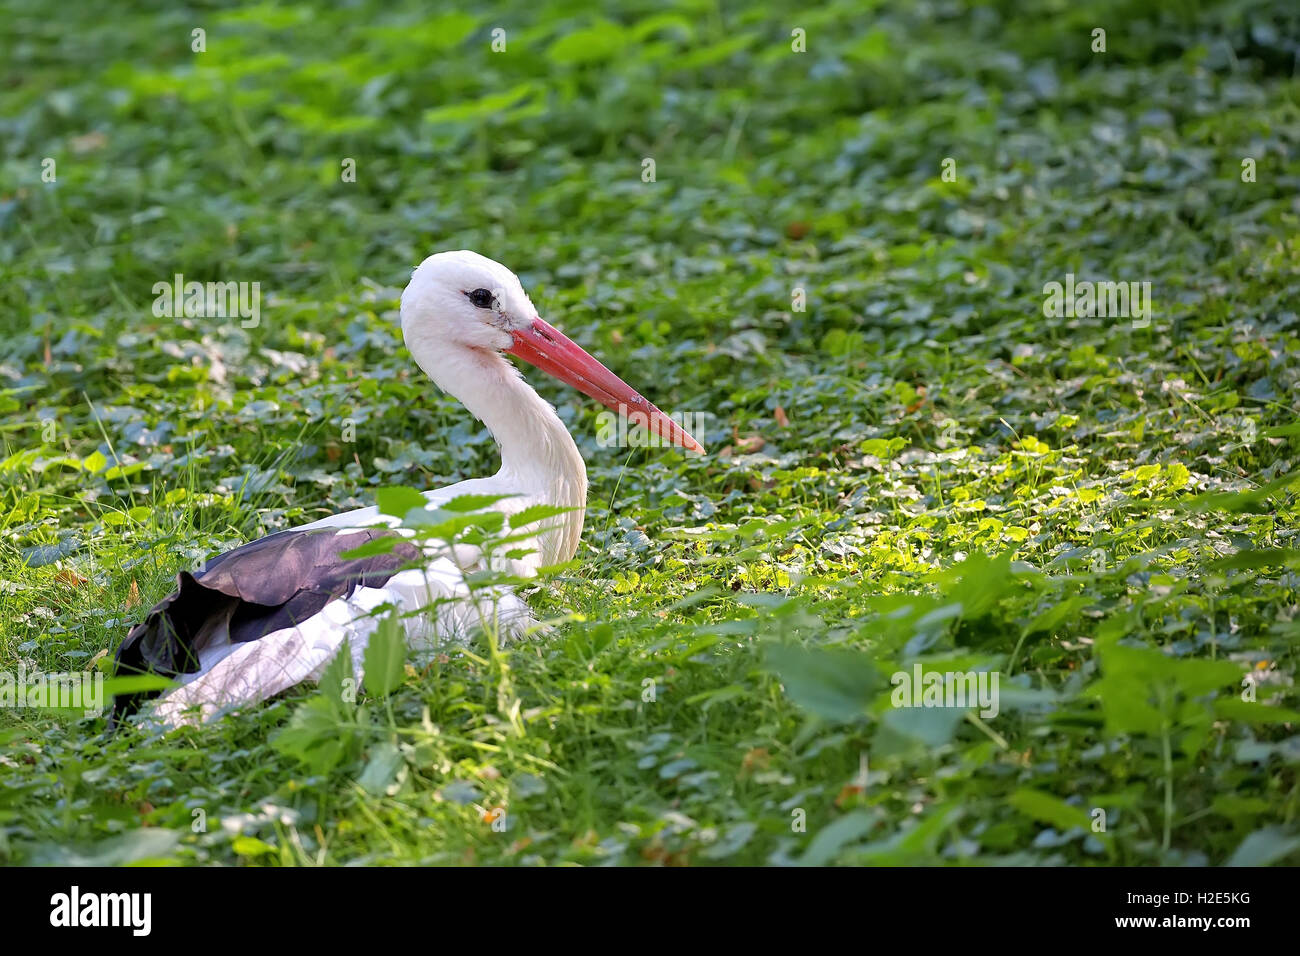 Cigogne blanche se reposant dans la nature Banque D'Images